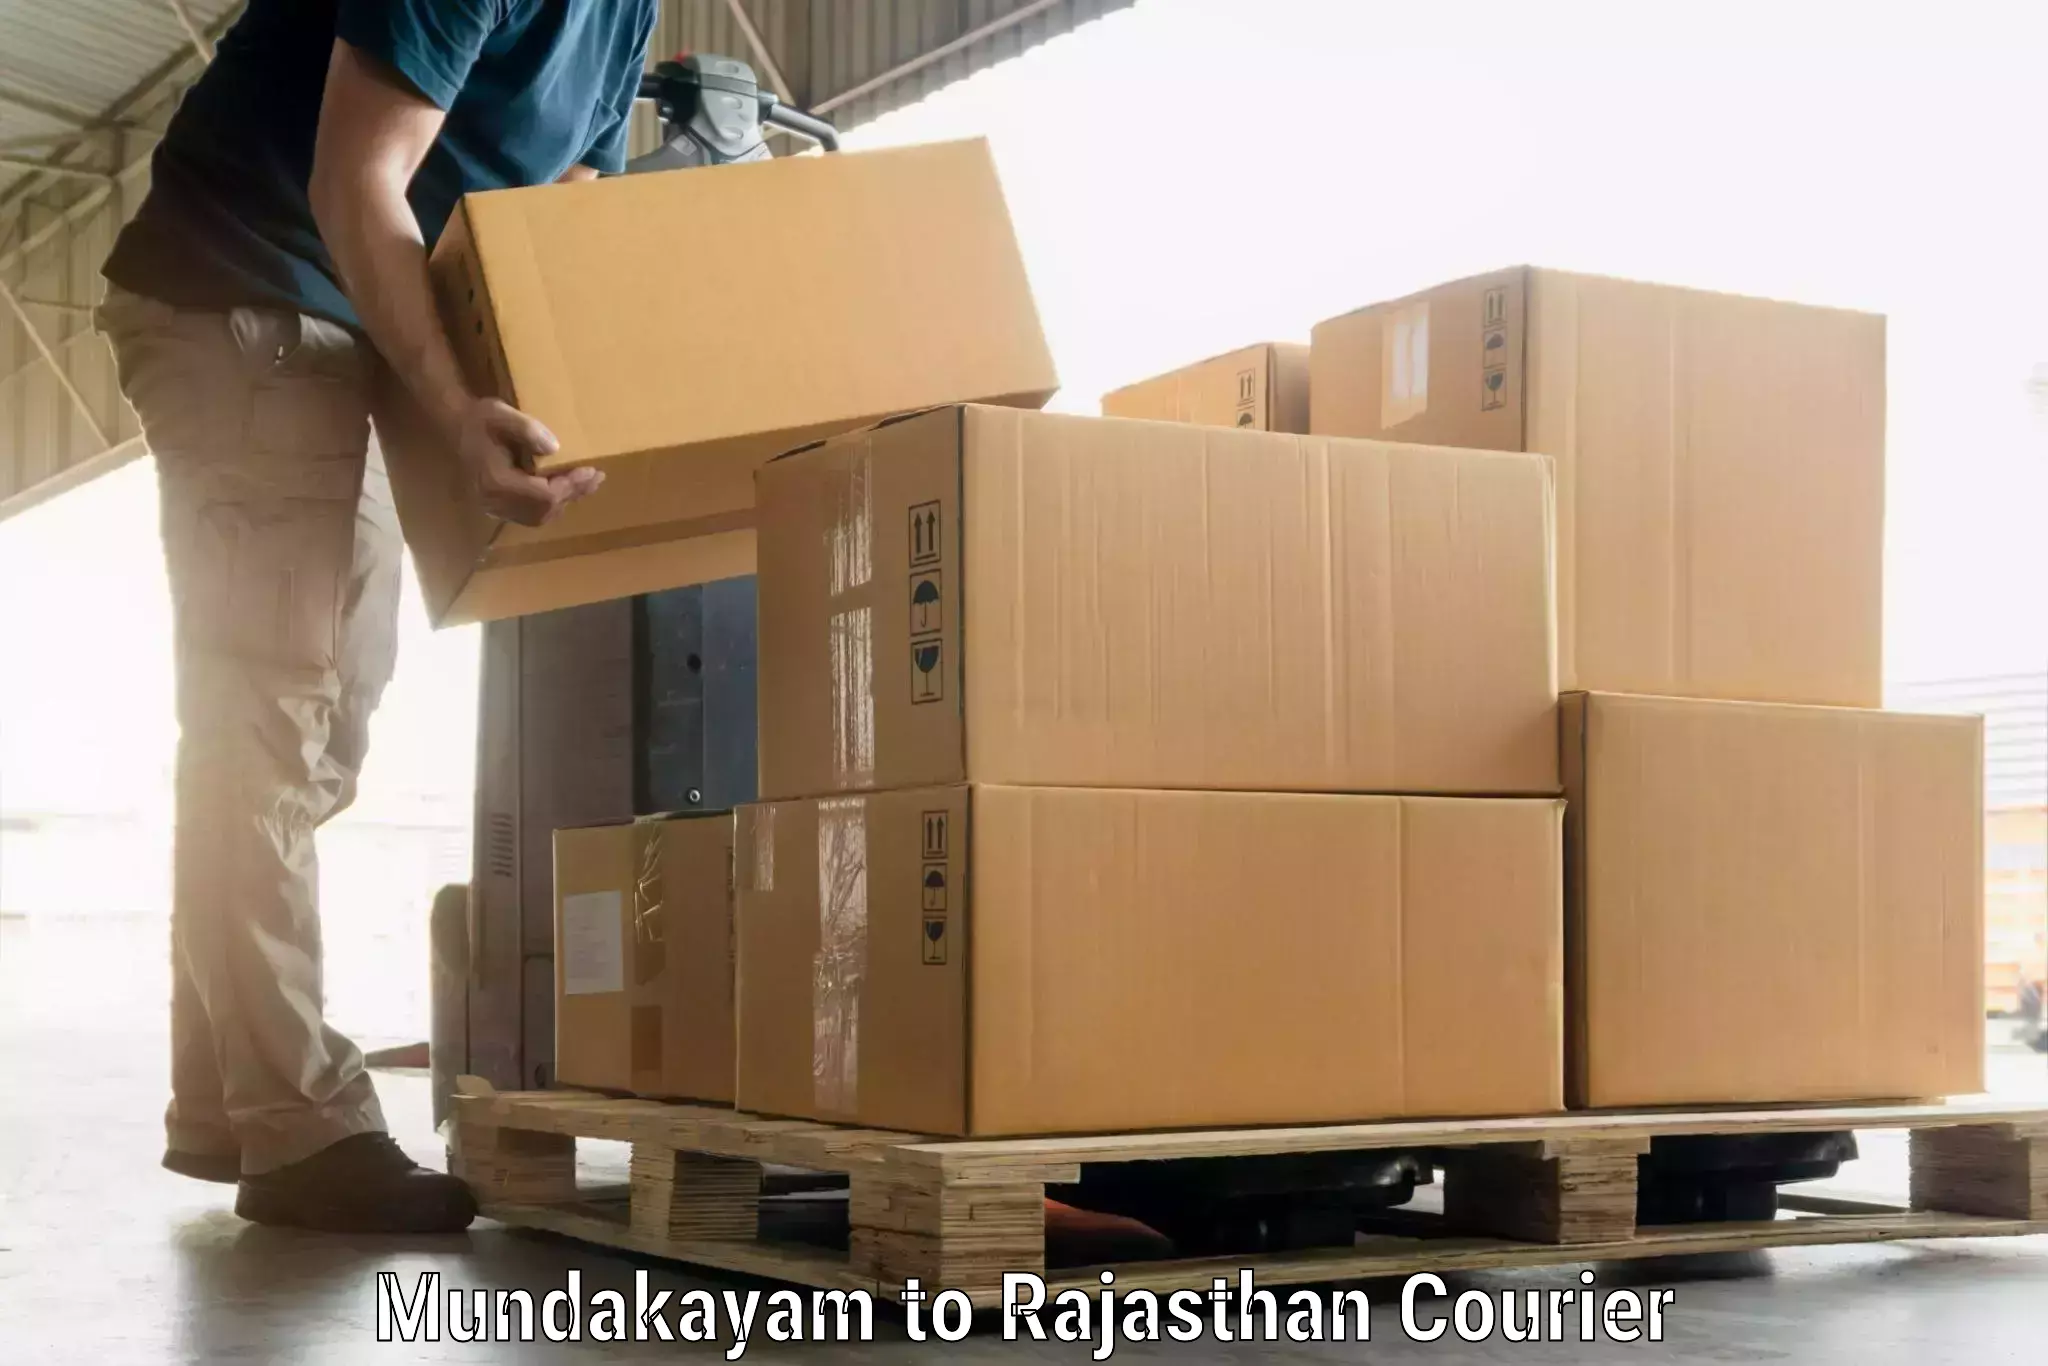 Baggage transport services Mundakayam to Rajasthan